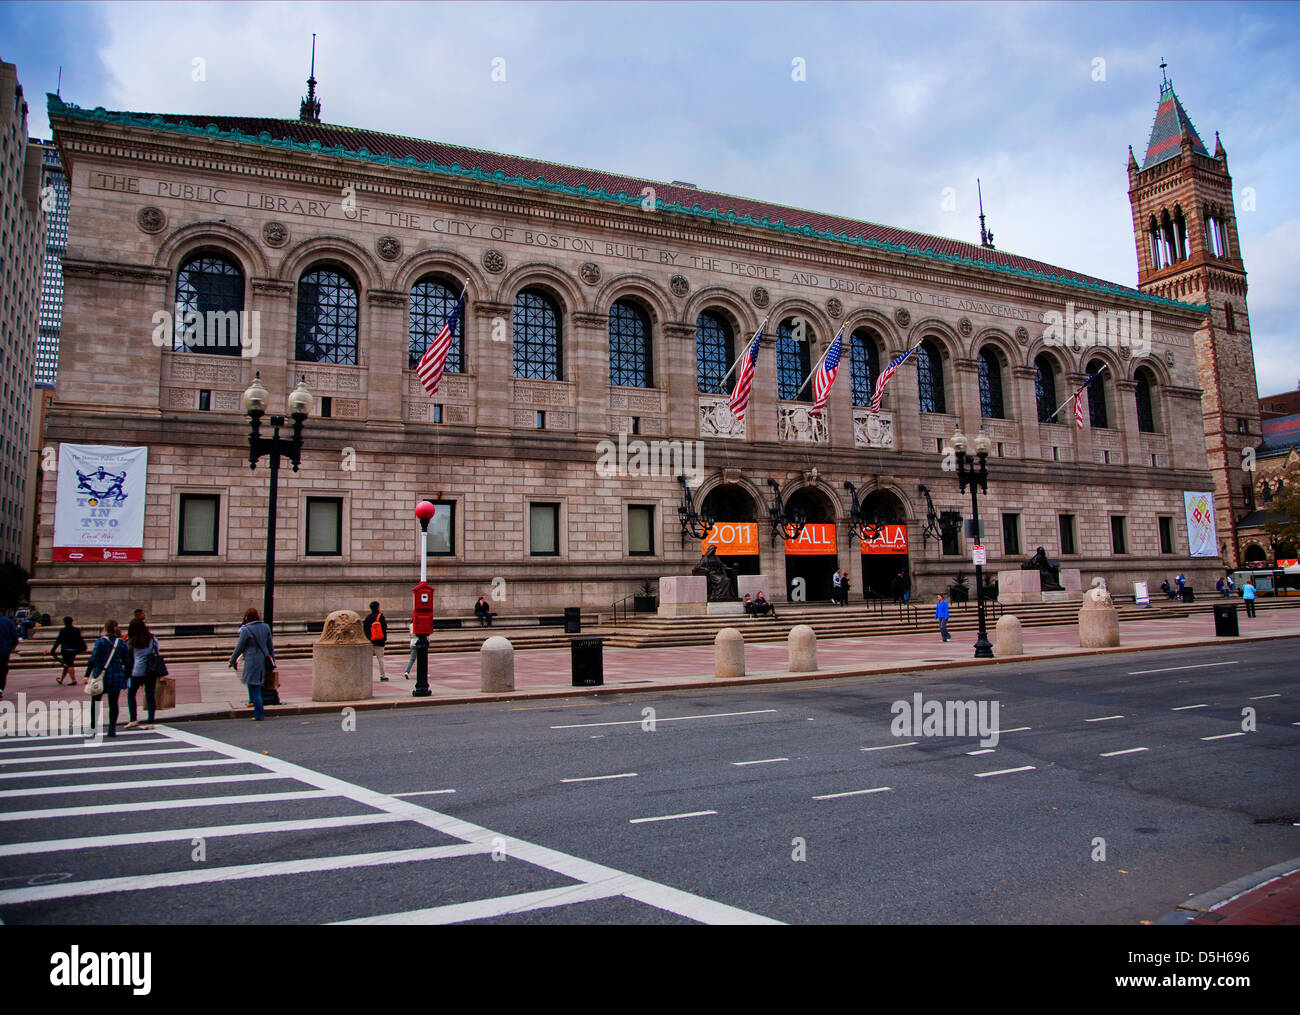 Exterior view of historic Boston Public Library, McKim Building, Boston, MA Stock Photo